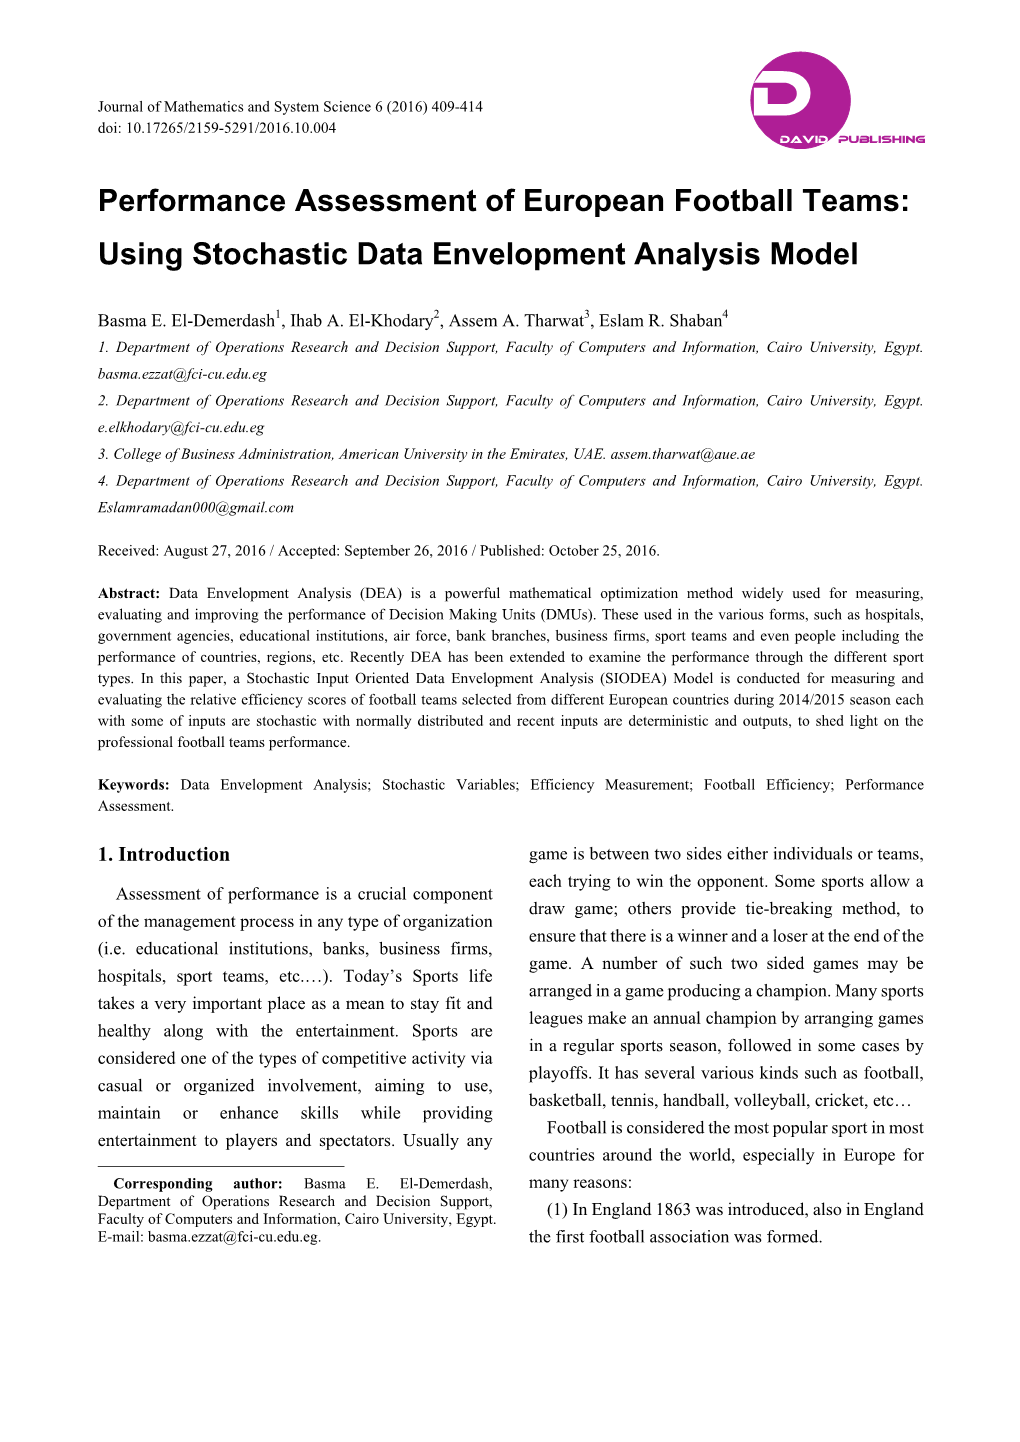 Performance Assessment of European Football Teams: Using Stochastic Data Envelopment Analysis Model